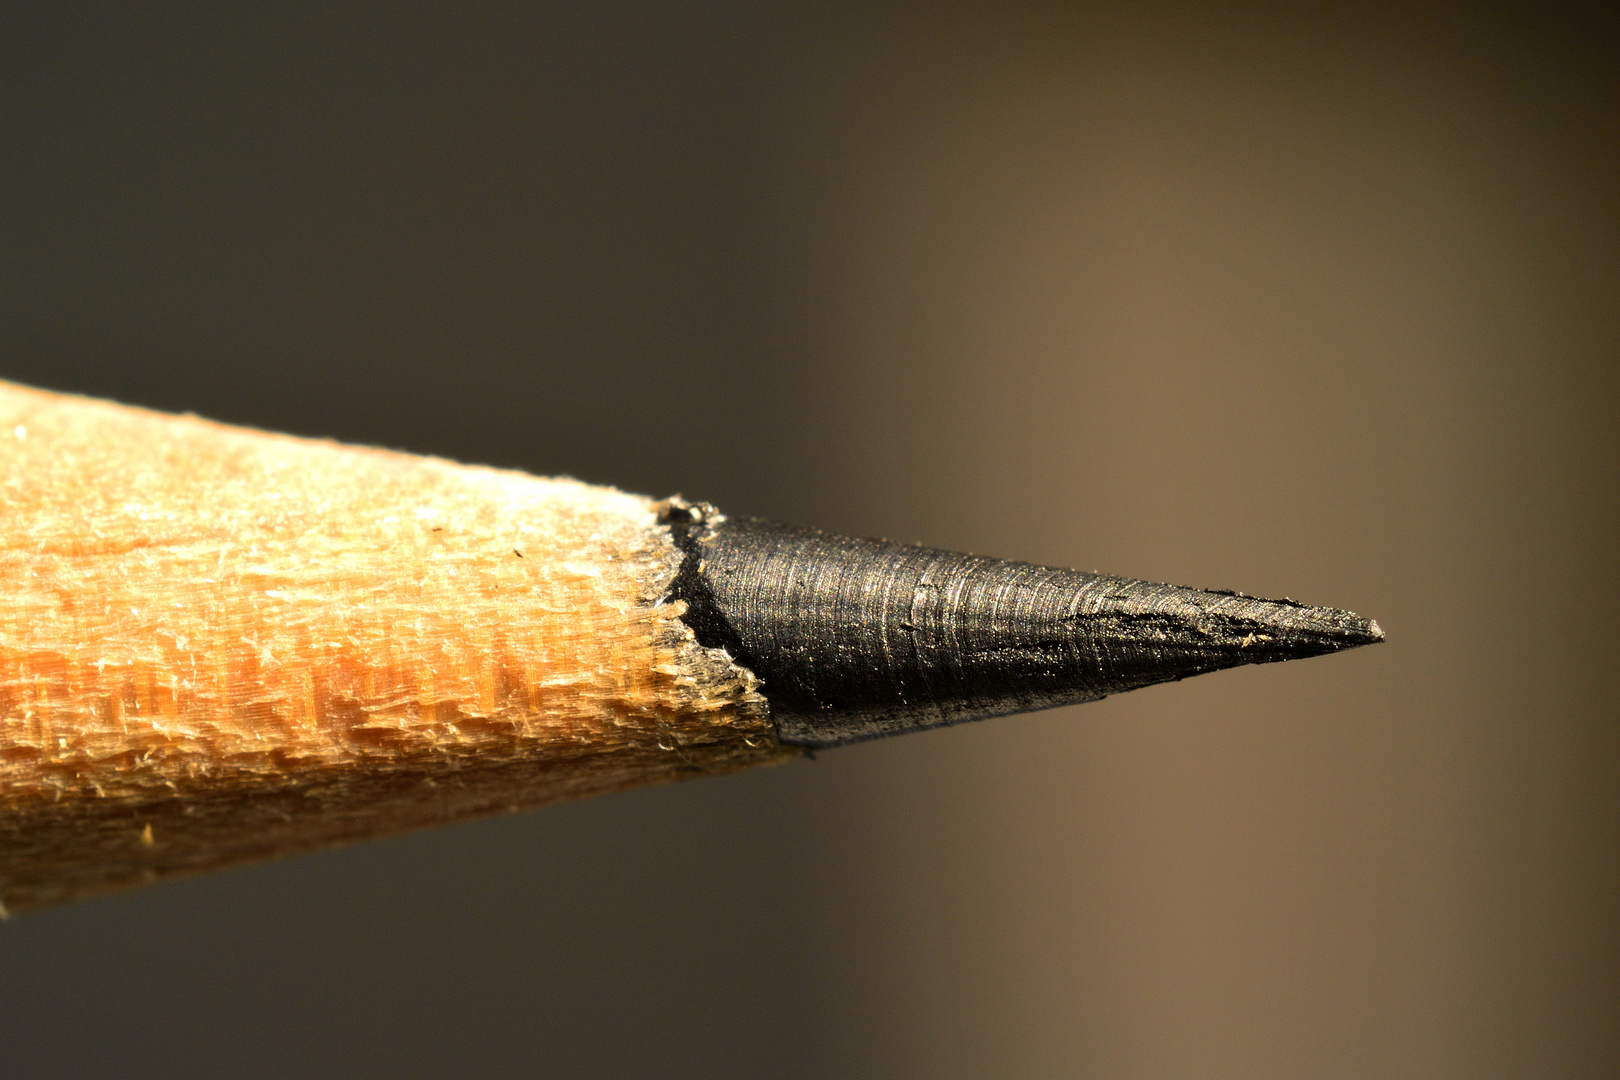 Bleistiftspitze angespitzt